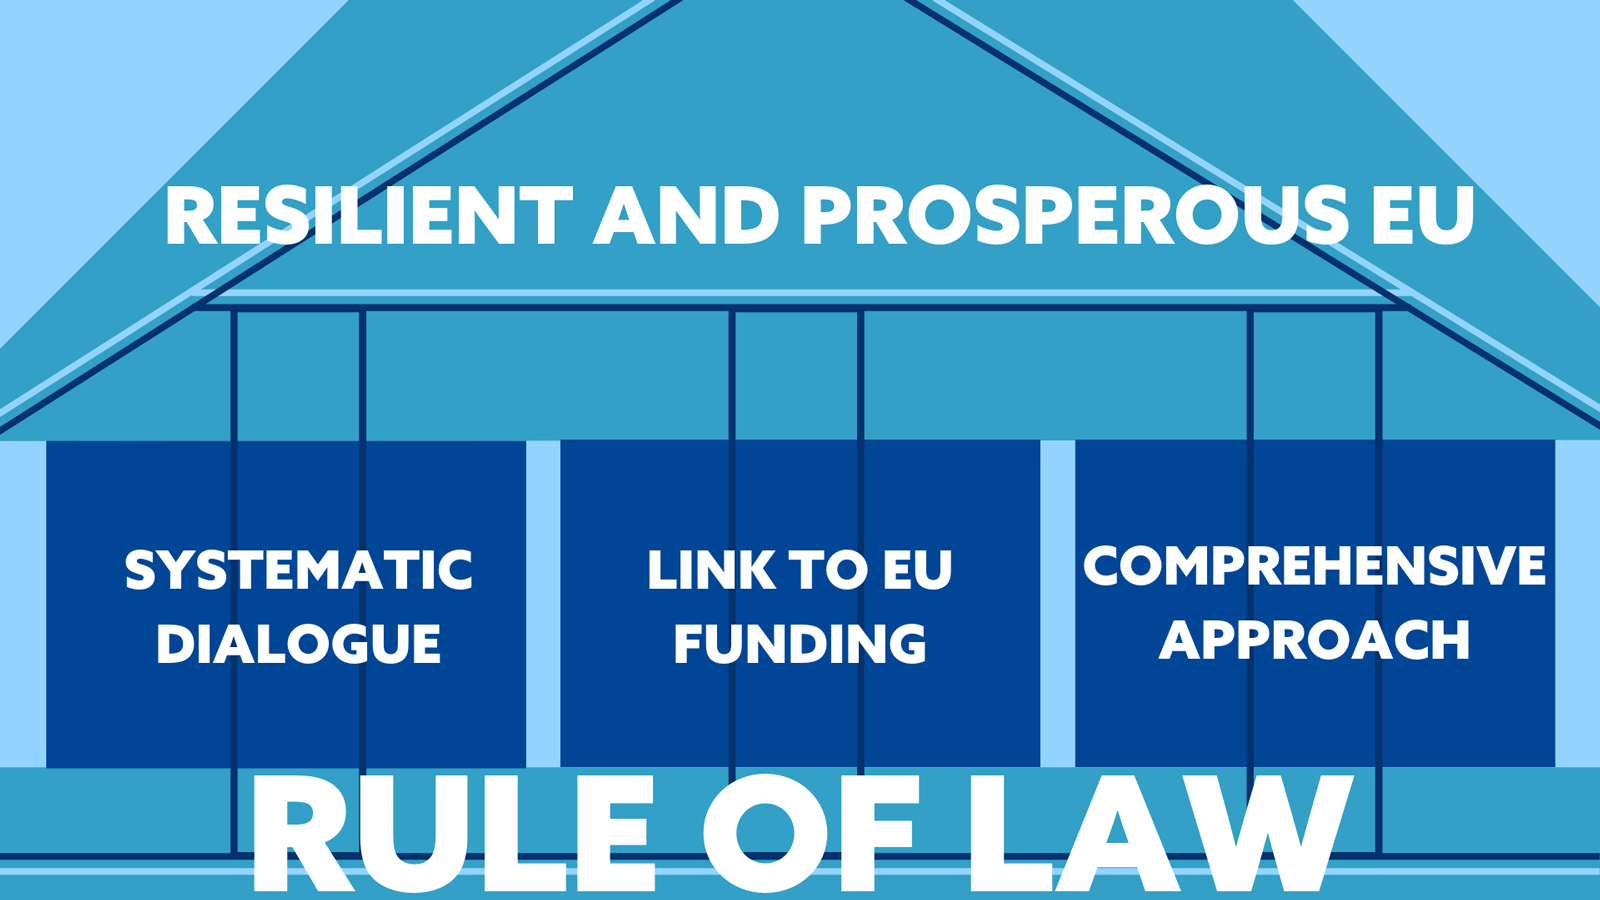 Cette image montre comment l'État de droit constitue le fondement d'une UE sûre et prospère. Le dialogue, le lien avec les financements européens et la coopération renforcent l'État de droit.